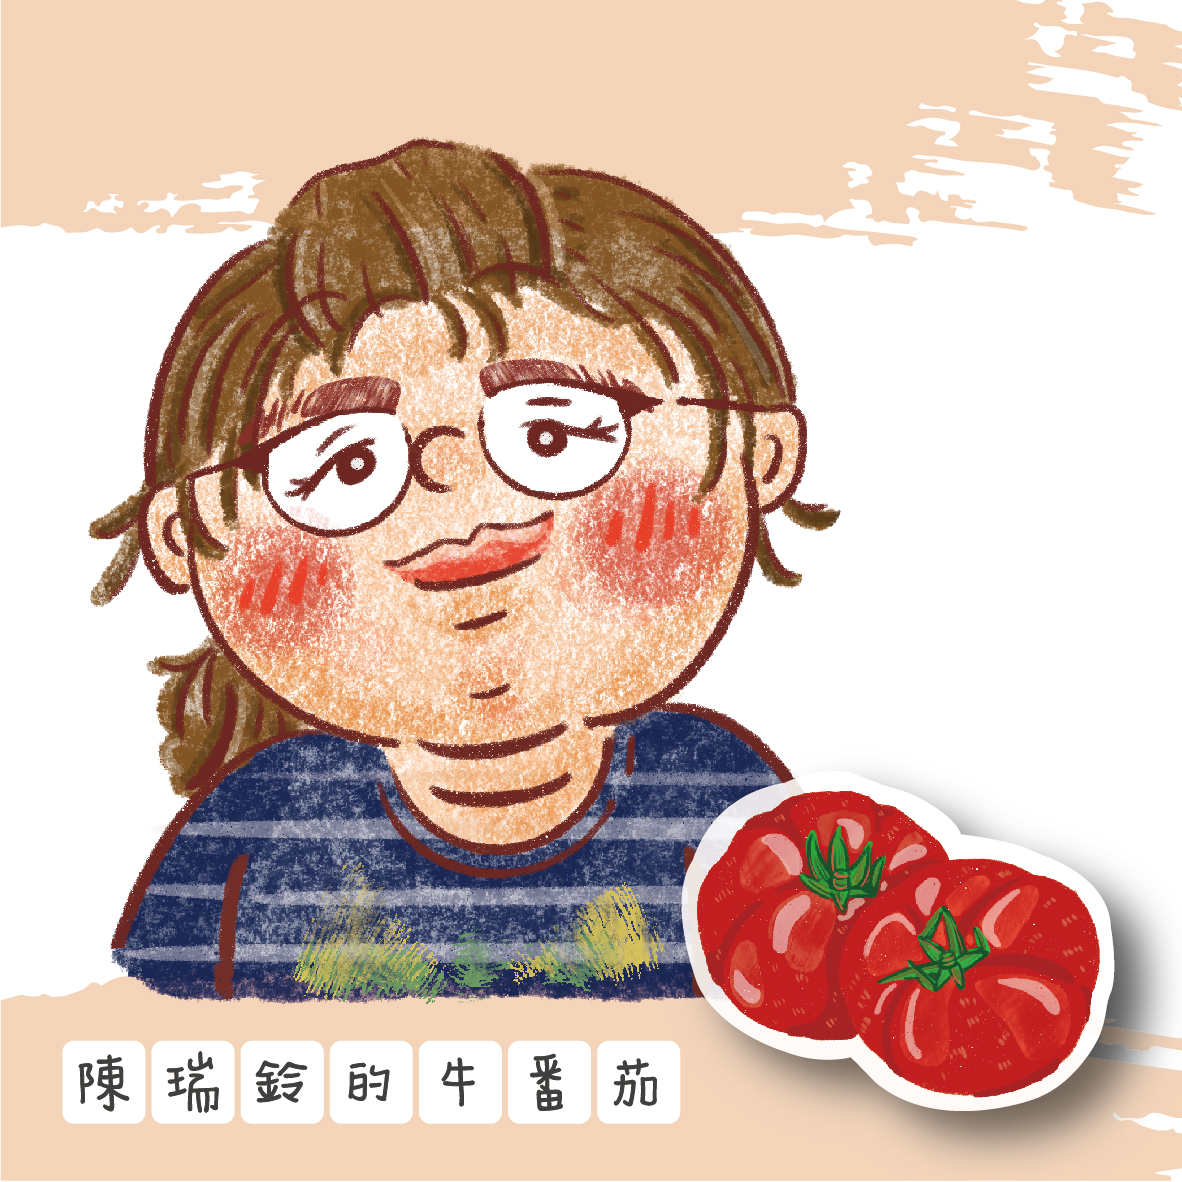 陳瑞鈴的牛番茄